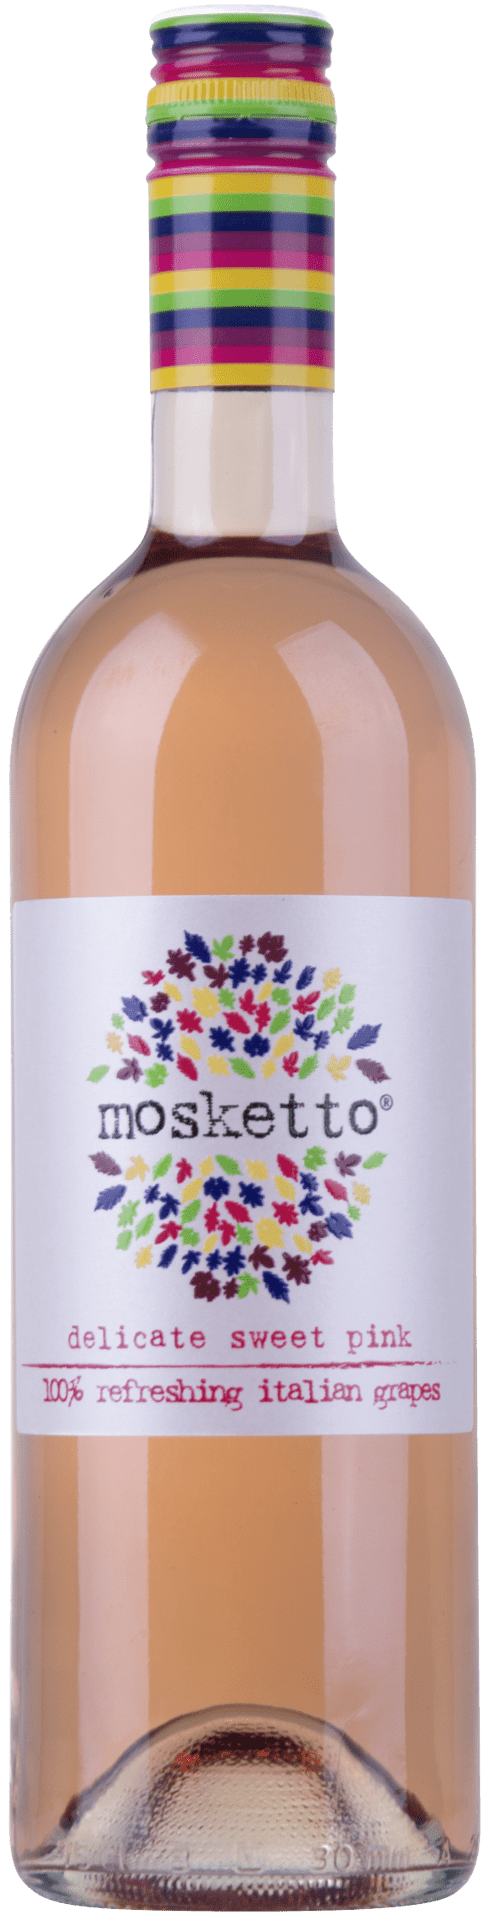 Mosketto delicato sweet red, Piemenont, Italien - StillWine GmbH